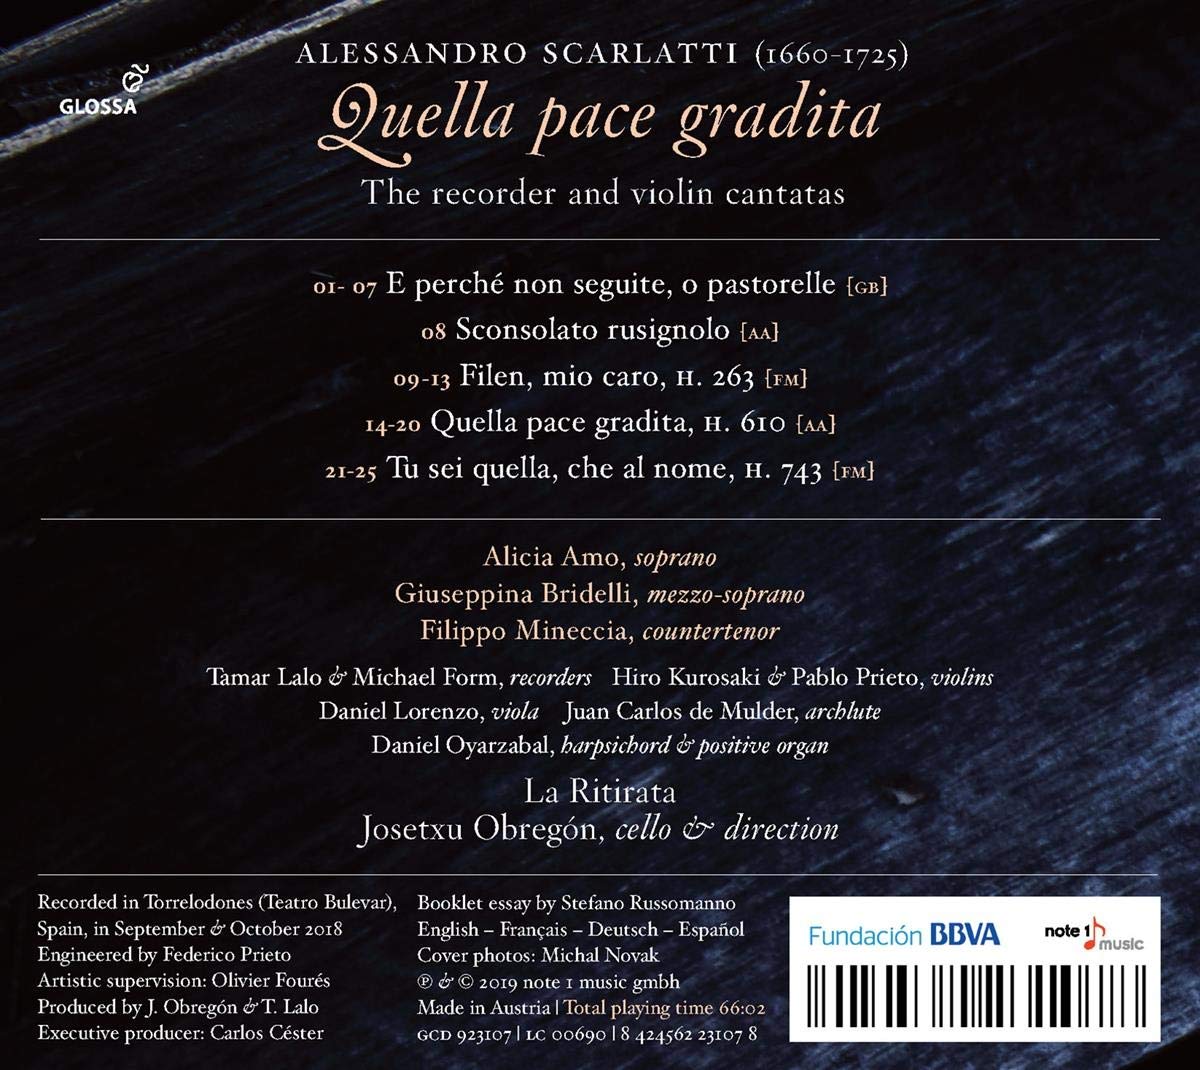 Josetxu Obregon / La Ritirata 알레산드로 스카를라티: 리코더와 바이올린 칸타타 작품집 (Alessandro Scarlatti: Quella pace gradita)